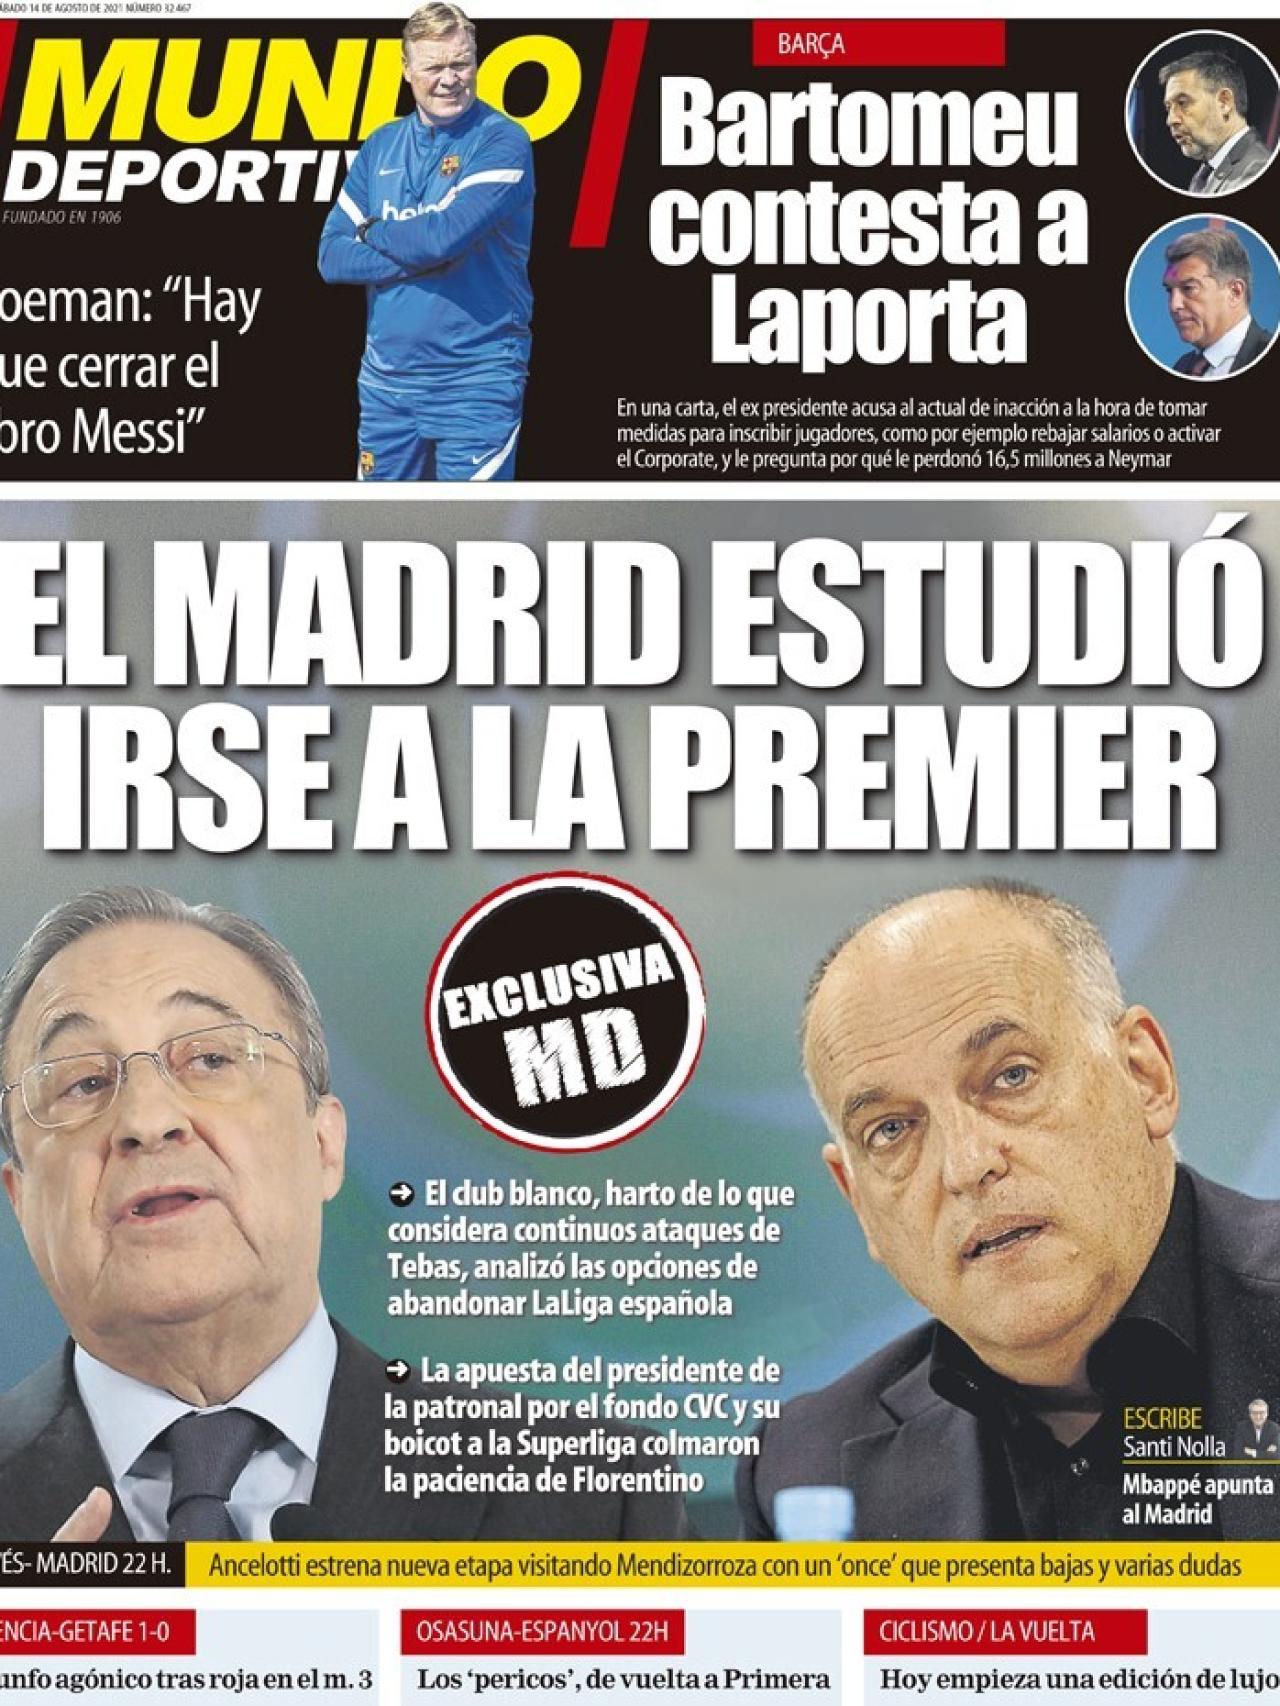 La portada del diario Mundo Deportivo (14/08/2021)